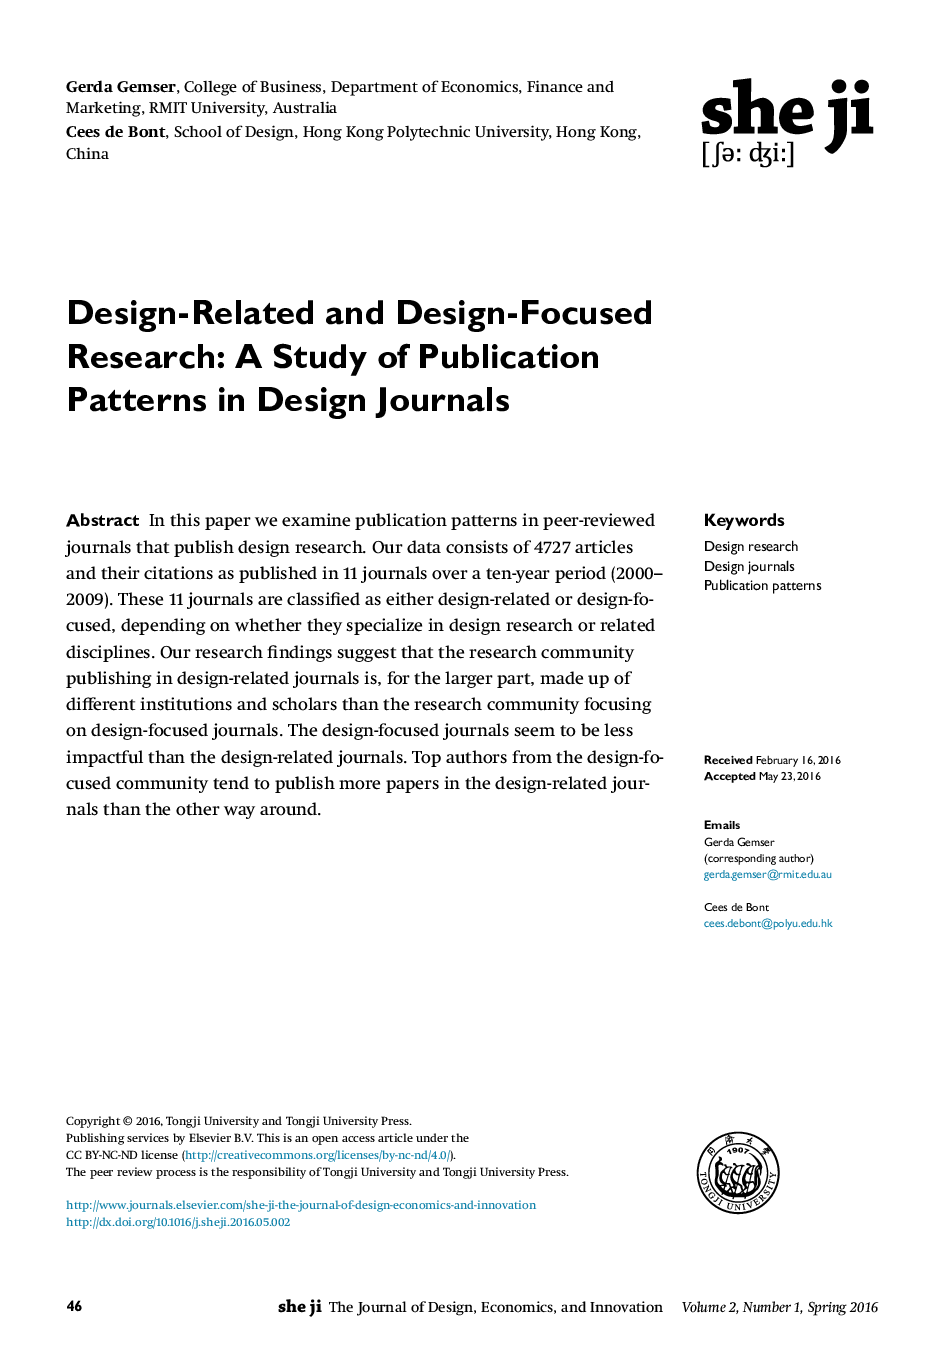 پژوهش مرتبط با طراحی و طراحی متمرکز: مطالعه الگوهای چاپ در نشریات طراحی